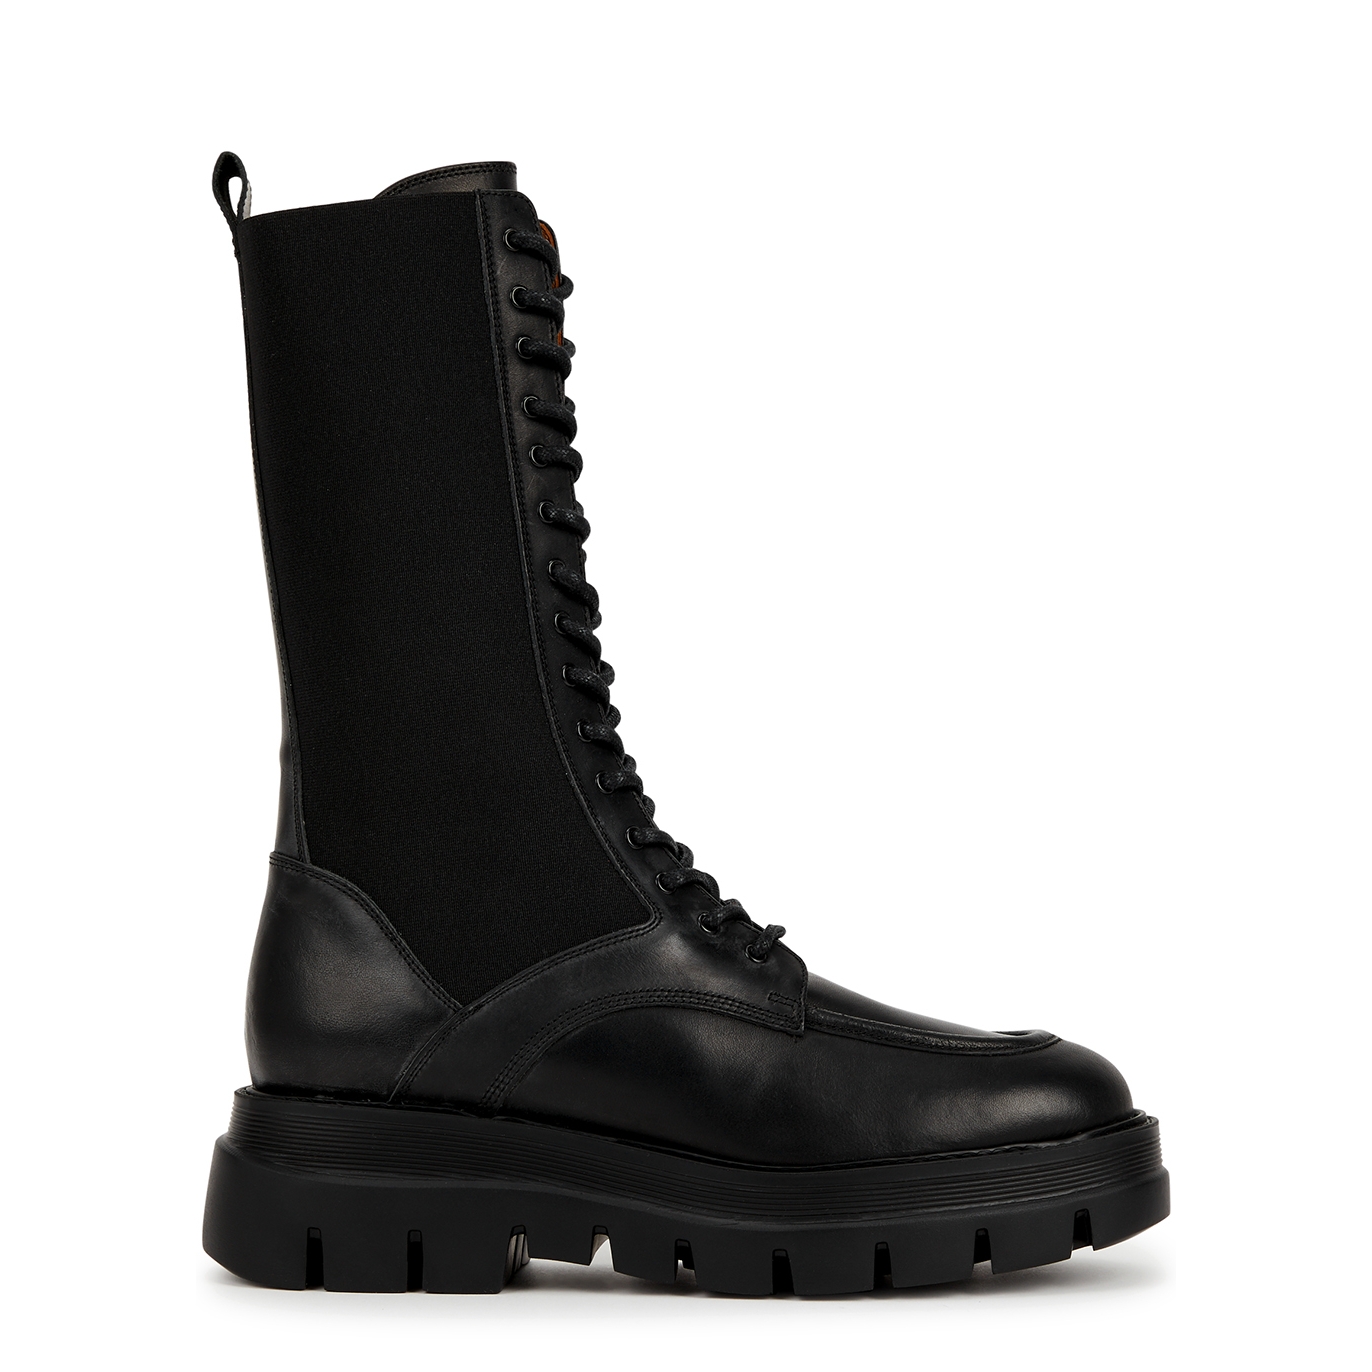 Atp Atelier Merlo 50 Leather Combat Boots - Black - 7